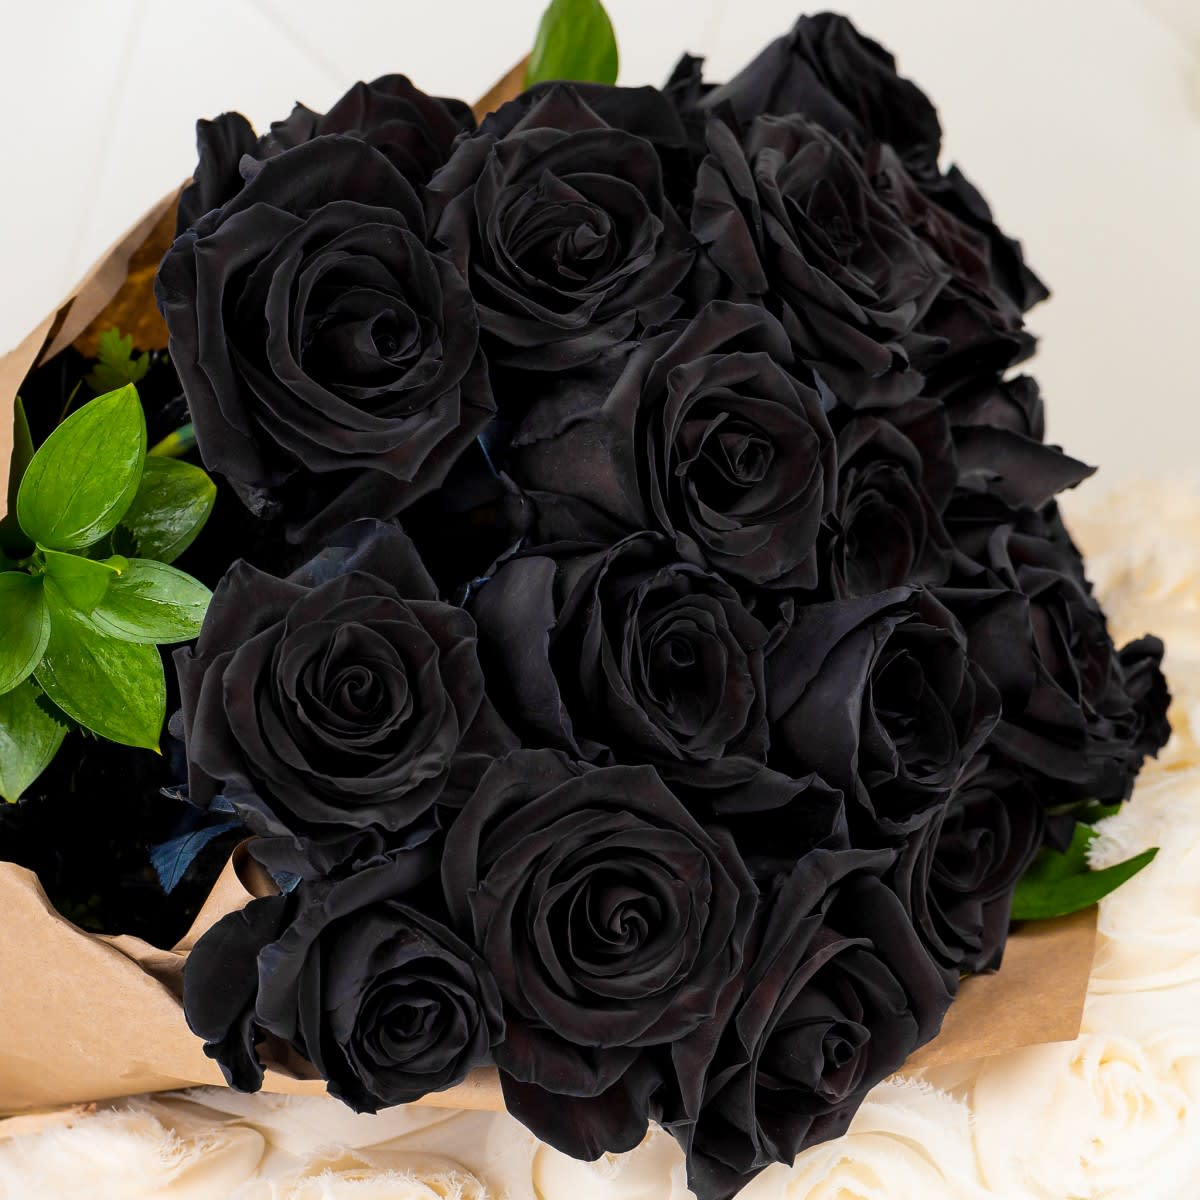 Black Roses Arranged in a Vase